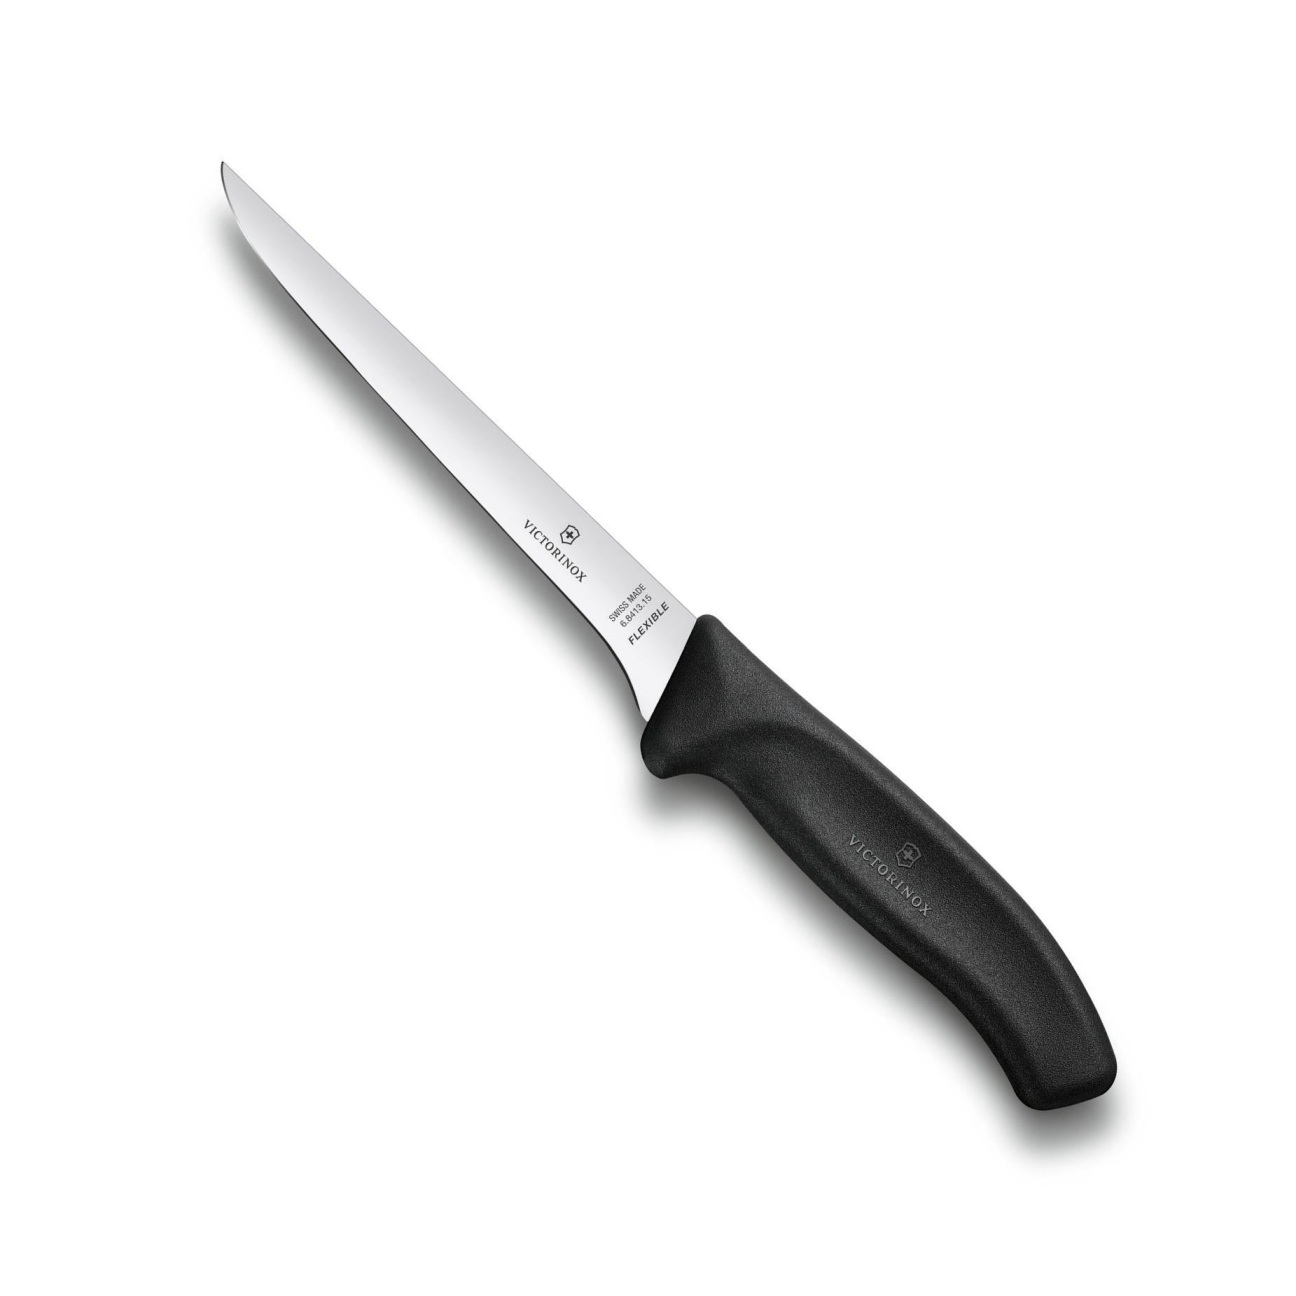 Vykošťovací nůž SWISS CLASSIC 15 cm černý - Victorinox